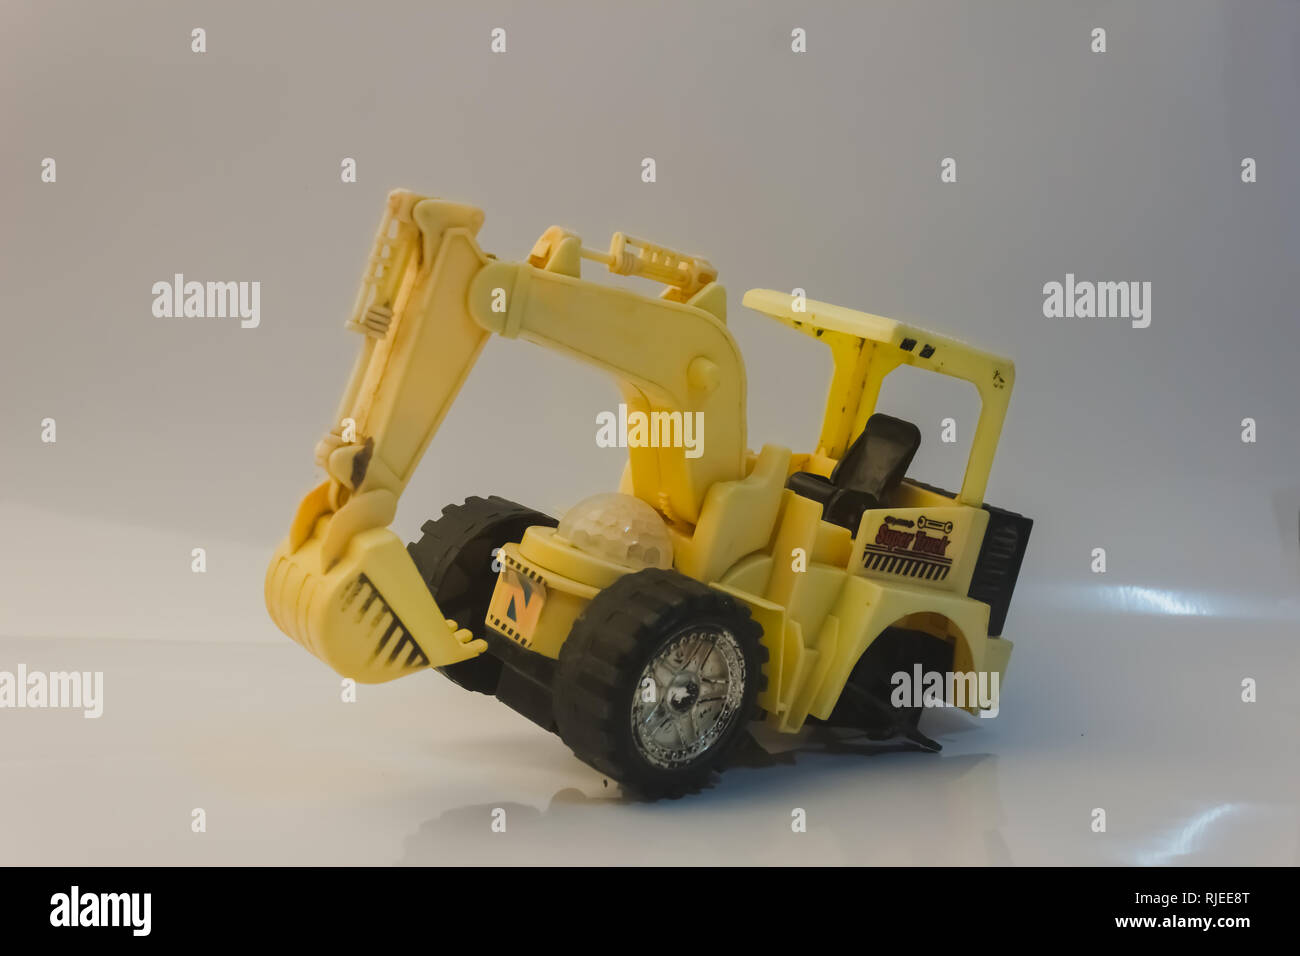 Traktor truck Spielzeug kind Auto gebrochen Rad Fahrzeug auf weißem  Hintergrund Stockfotografie - Alamy